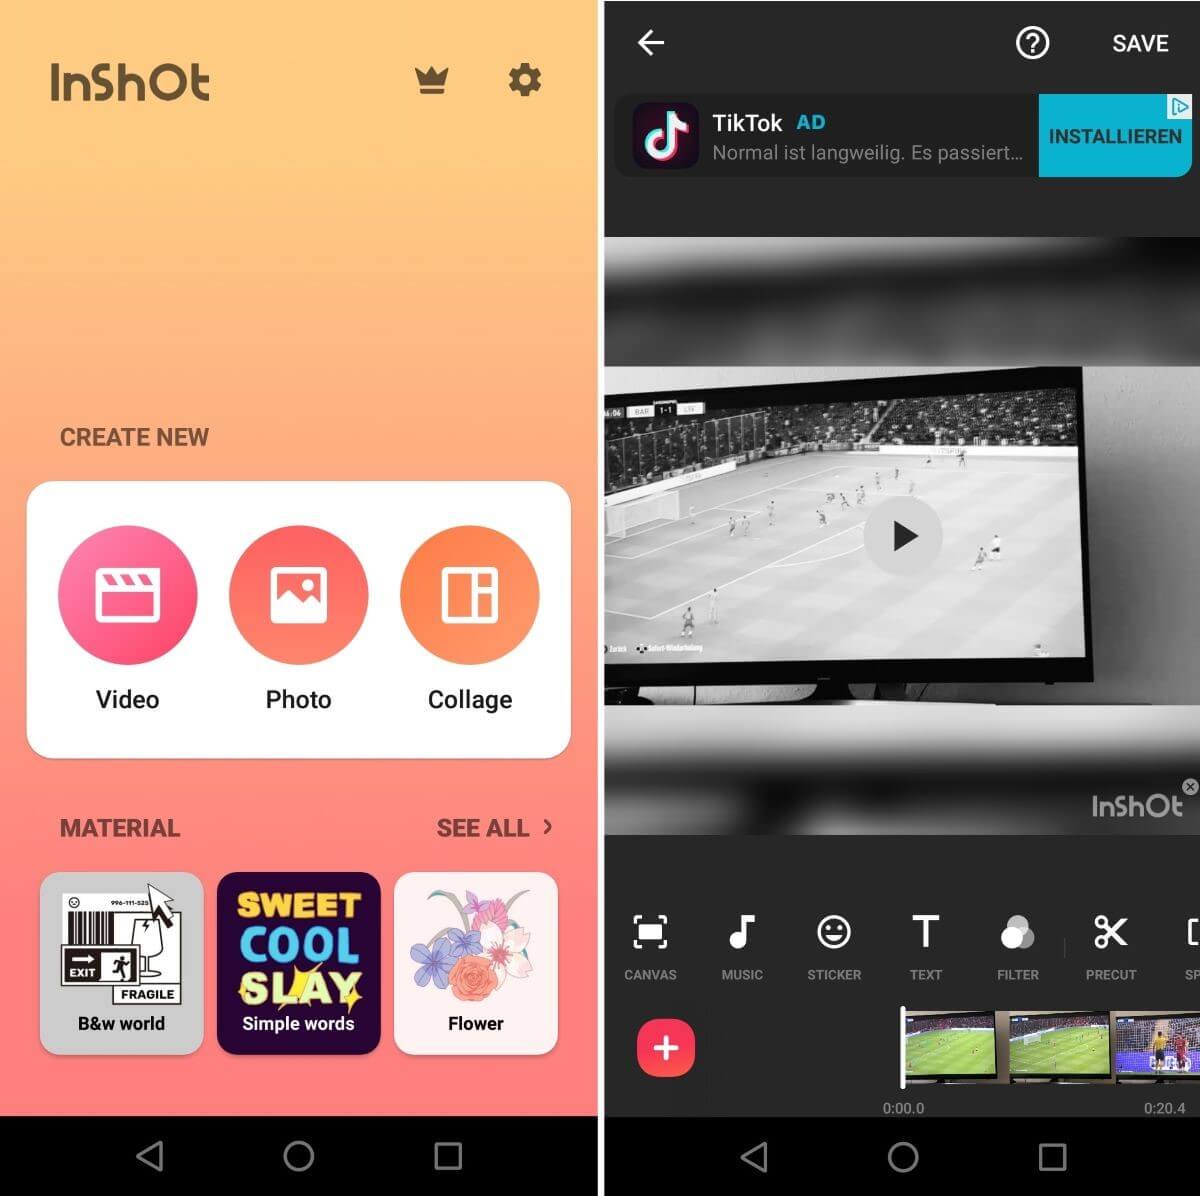 Captura de pantalla de la app para Android InShOt